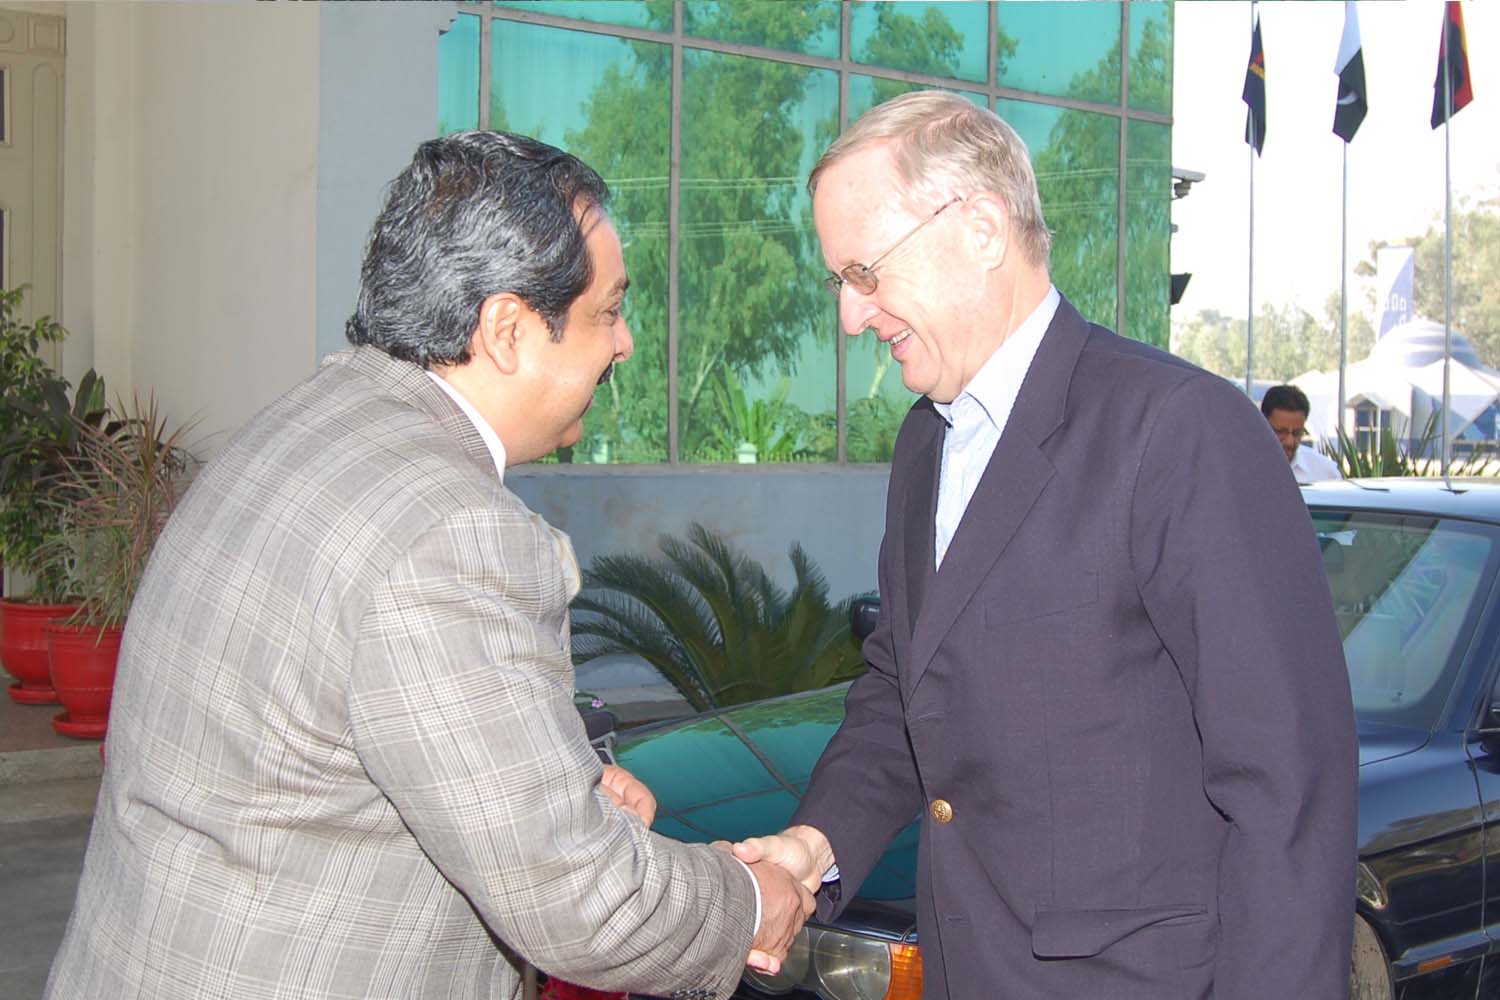 German Ambassador Dr. Gunter Mulack greets CEO Shahid Raza upon his arrival to Madrigal [30-10-2007]